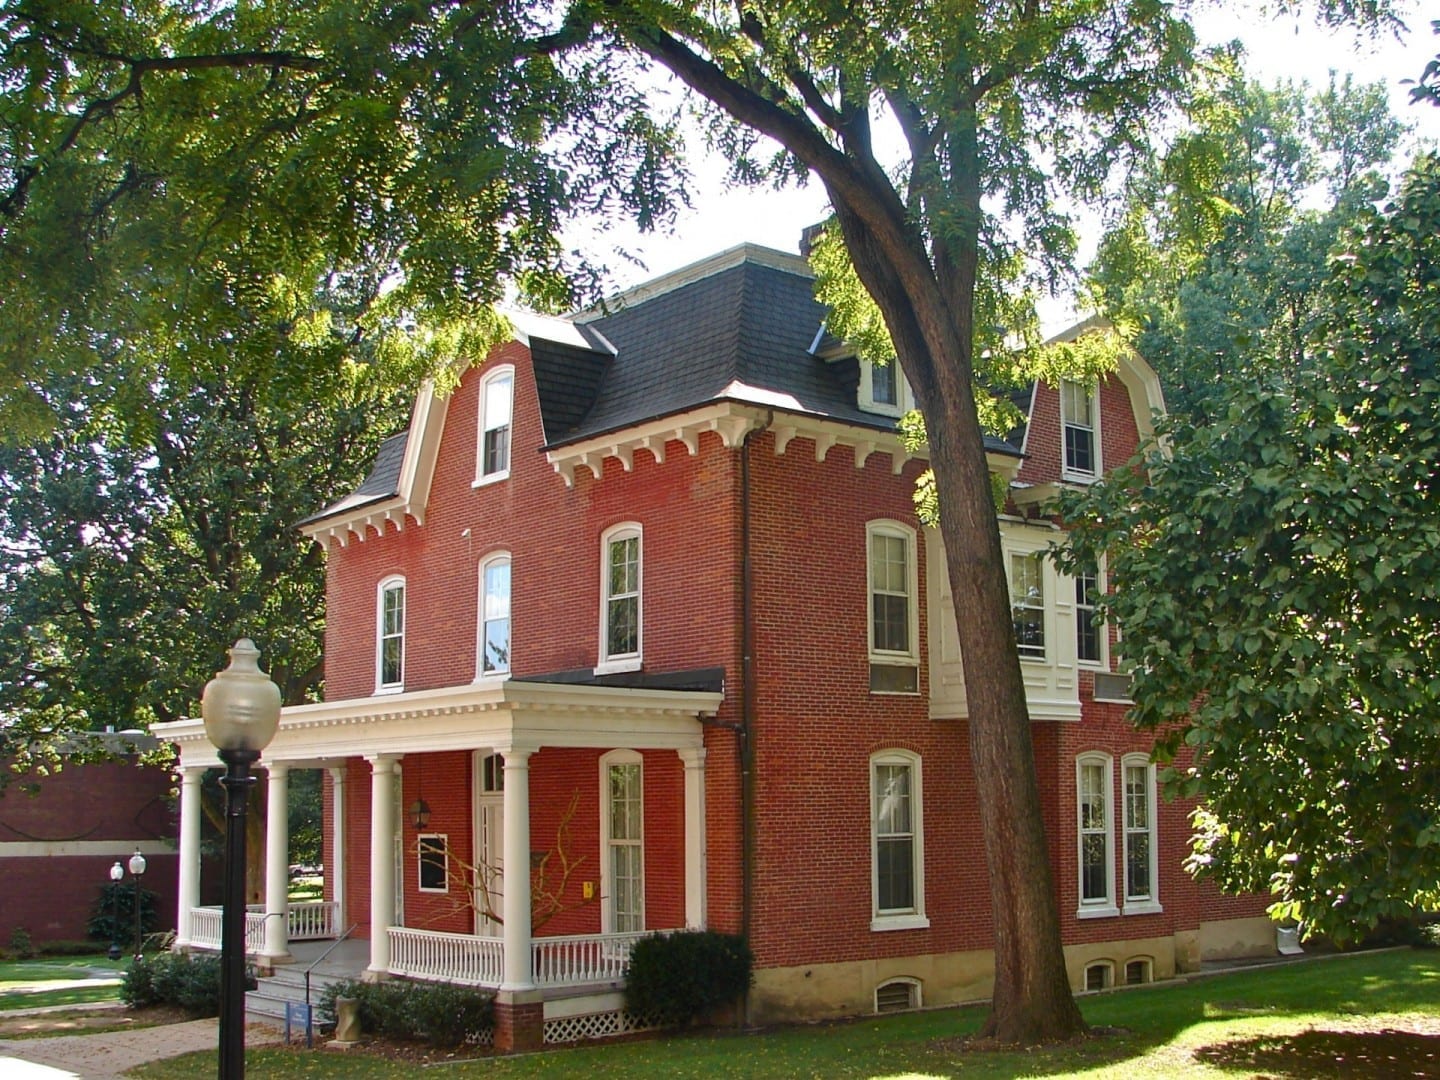 Casa de ex-alumnos de Huegel en el distrito histórico del campus de Franklin y Marshall Lancaster, Pensilvania Estados Unidos